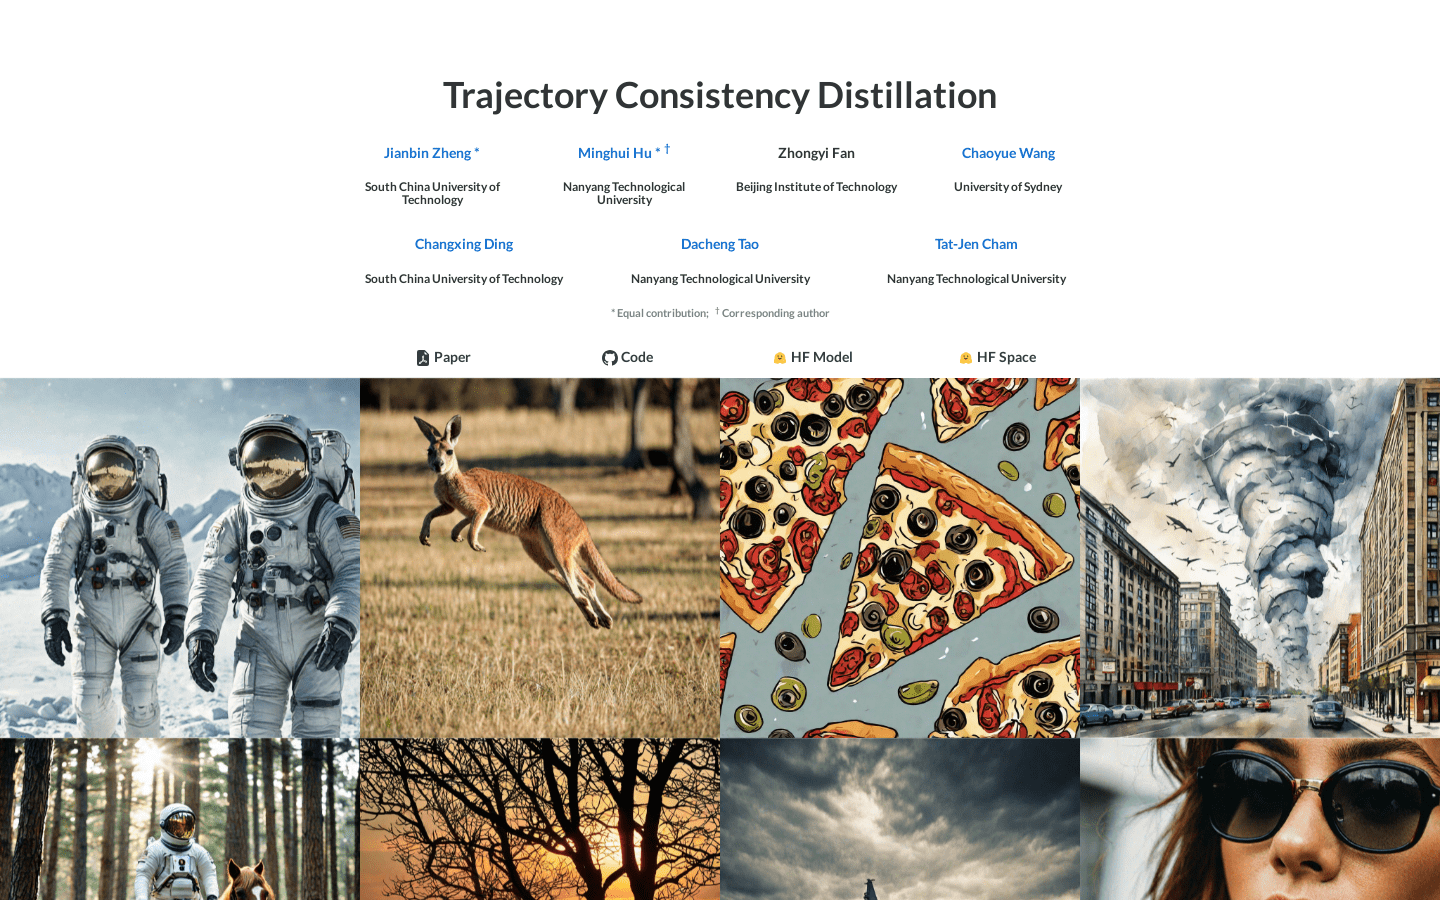 Trajectory Consistency Distillation (TCD)